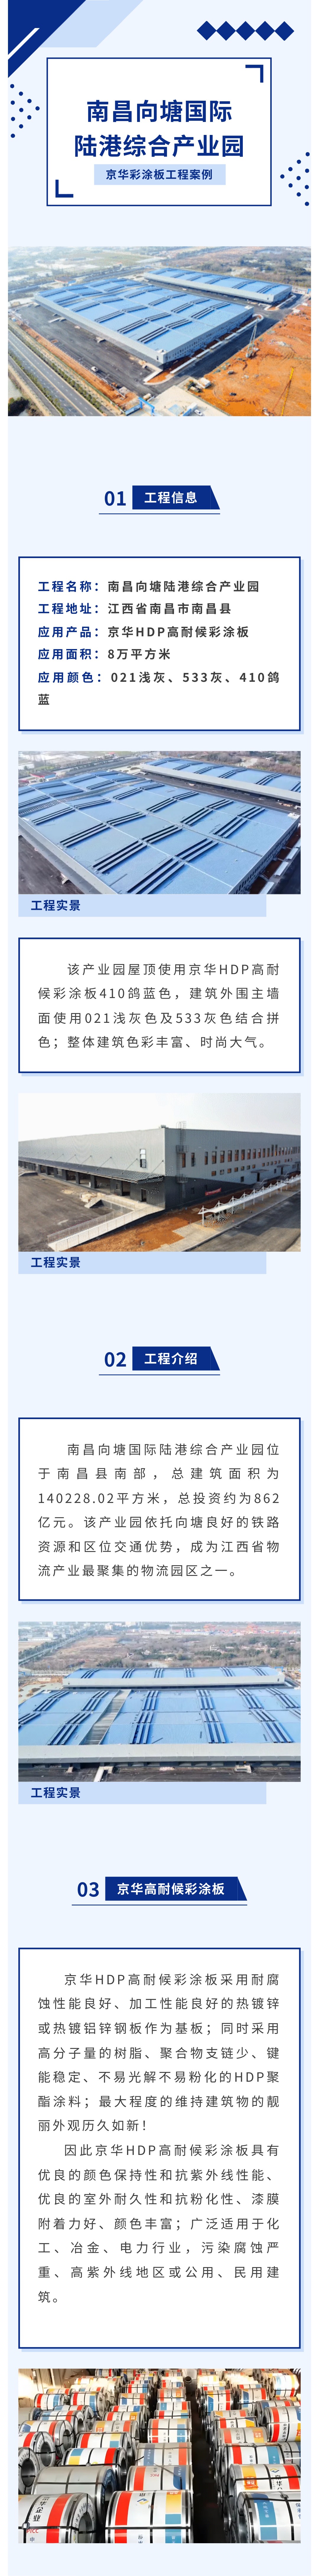 京华高耐候彩涂板应用案例丨南昌向塘国际陆港综合产业园